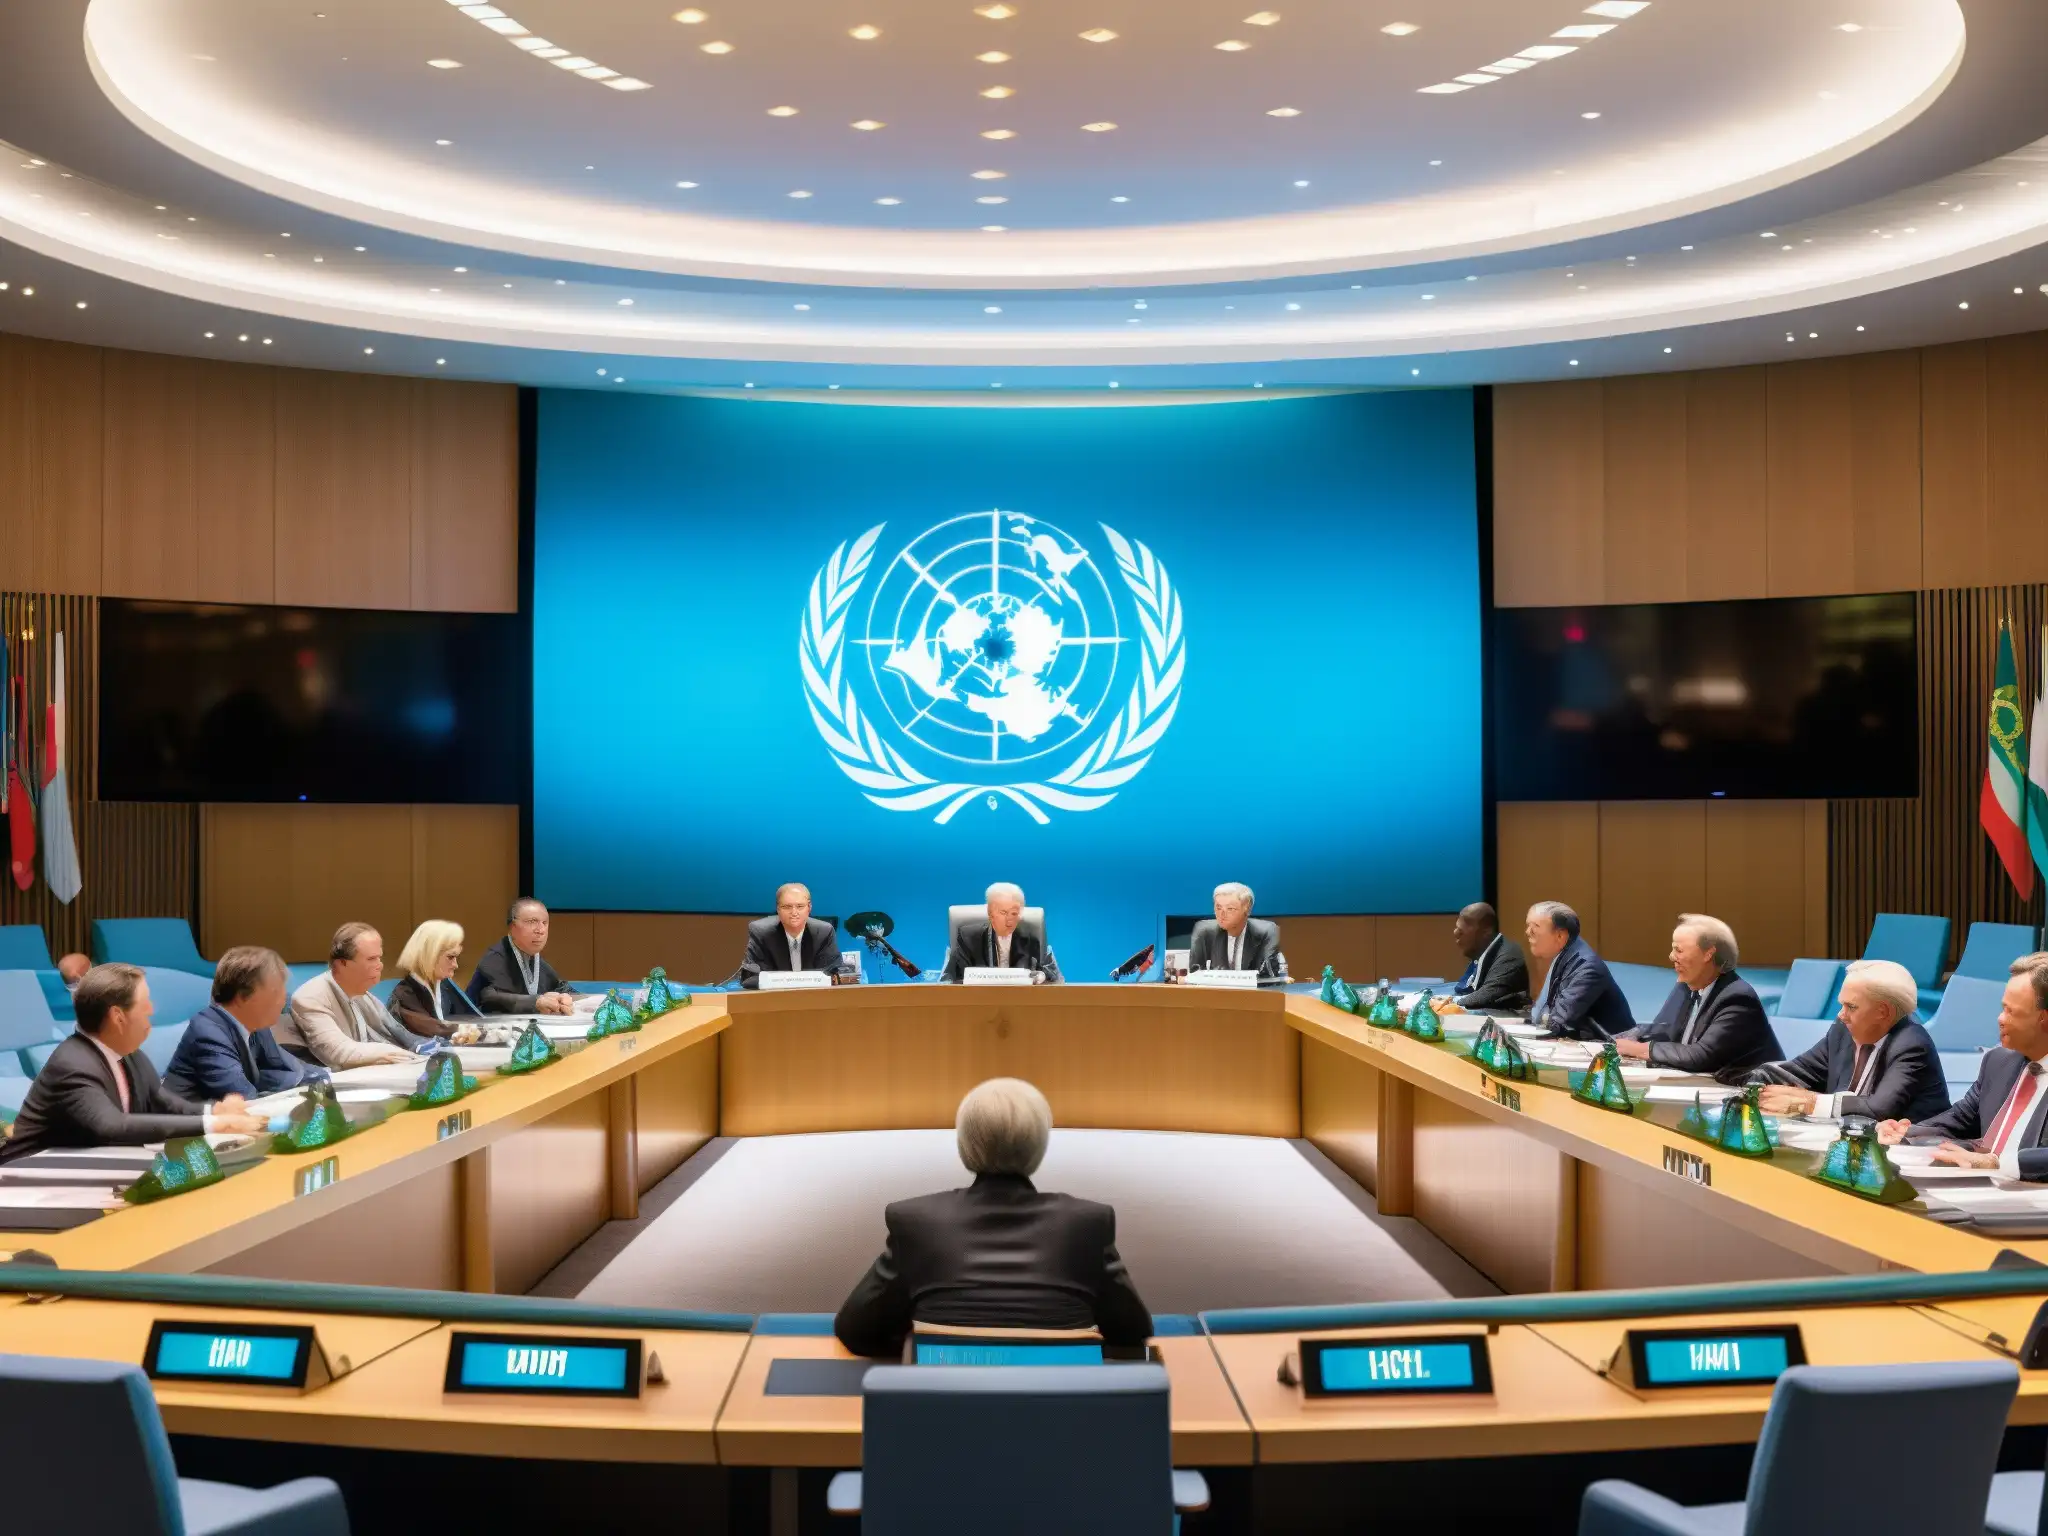 Representantes de distintos países debaten en la ONU, reflejando el análisis del Nuevo Orden Mundial